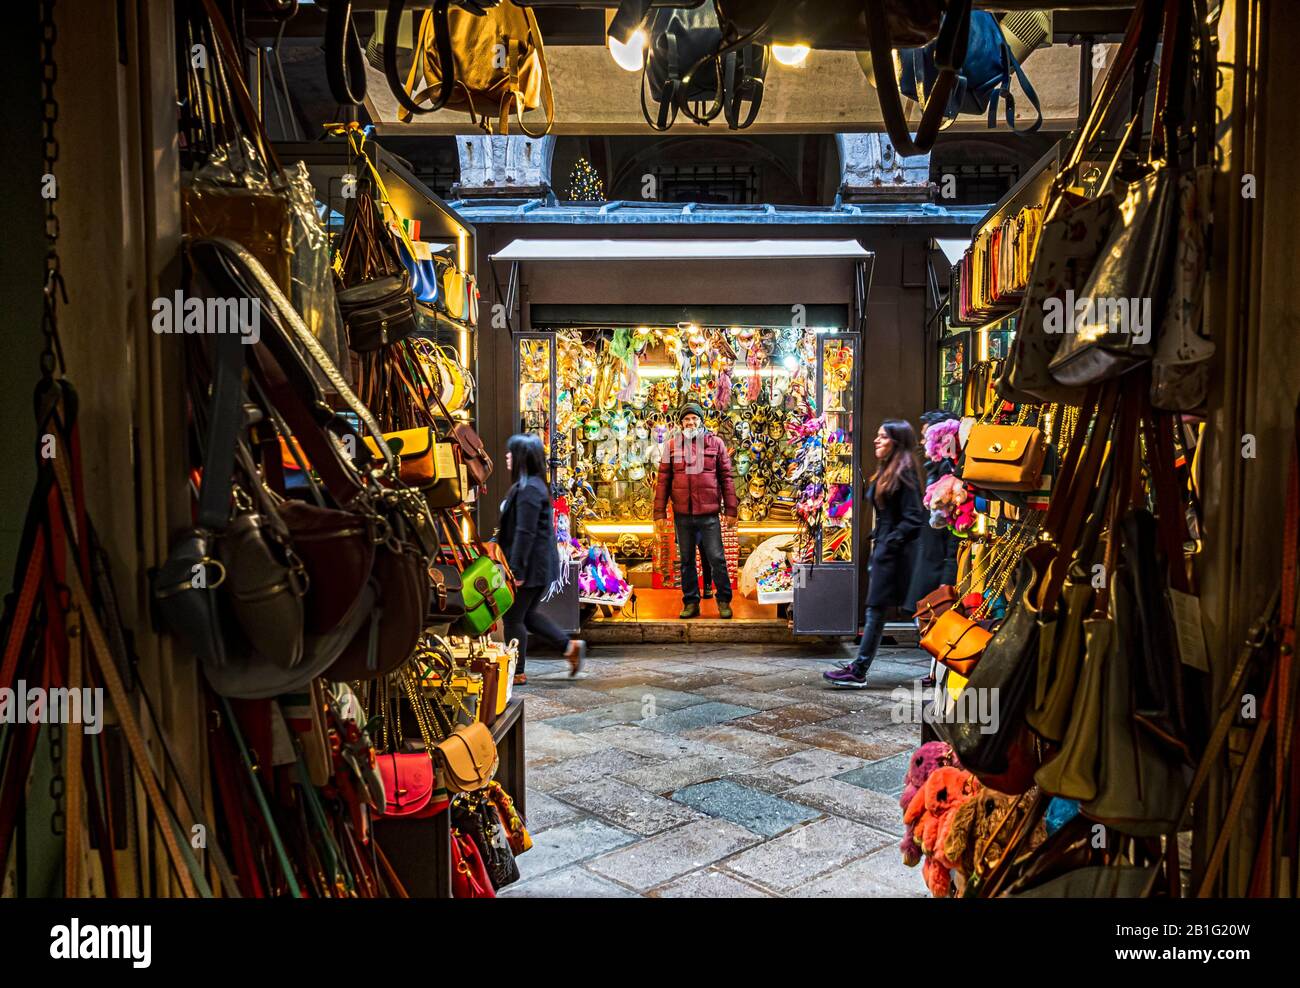 Venedig 23.02.2020: Die Stadt Venedig ist voll von kleinen Geschäften mit Souvenirs, Masken und Taschen, die sich im Besitz von Vielvölkerern befinden, die aus Allove kommen Stockfoto